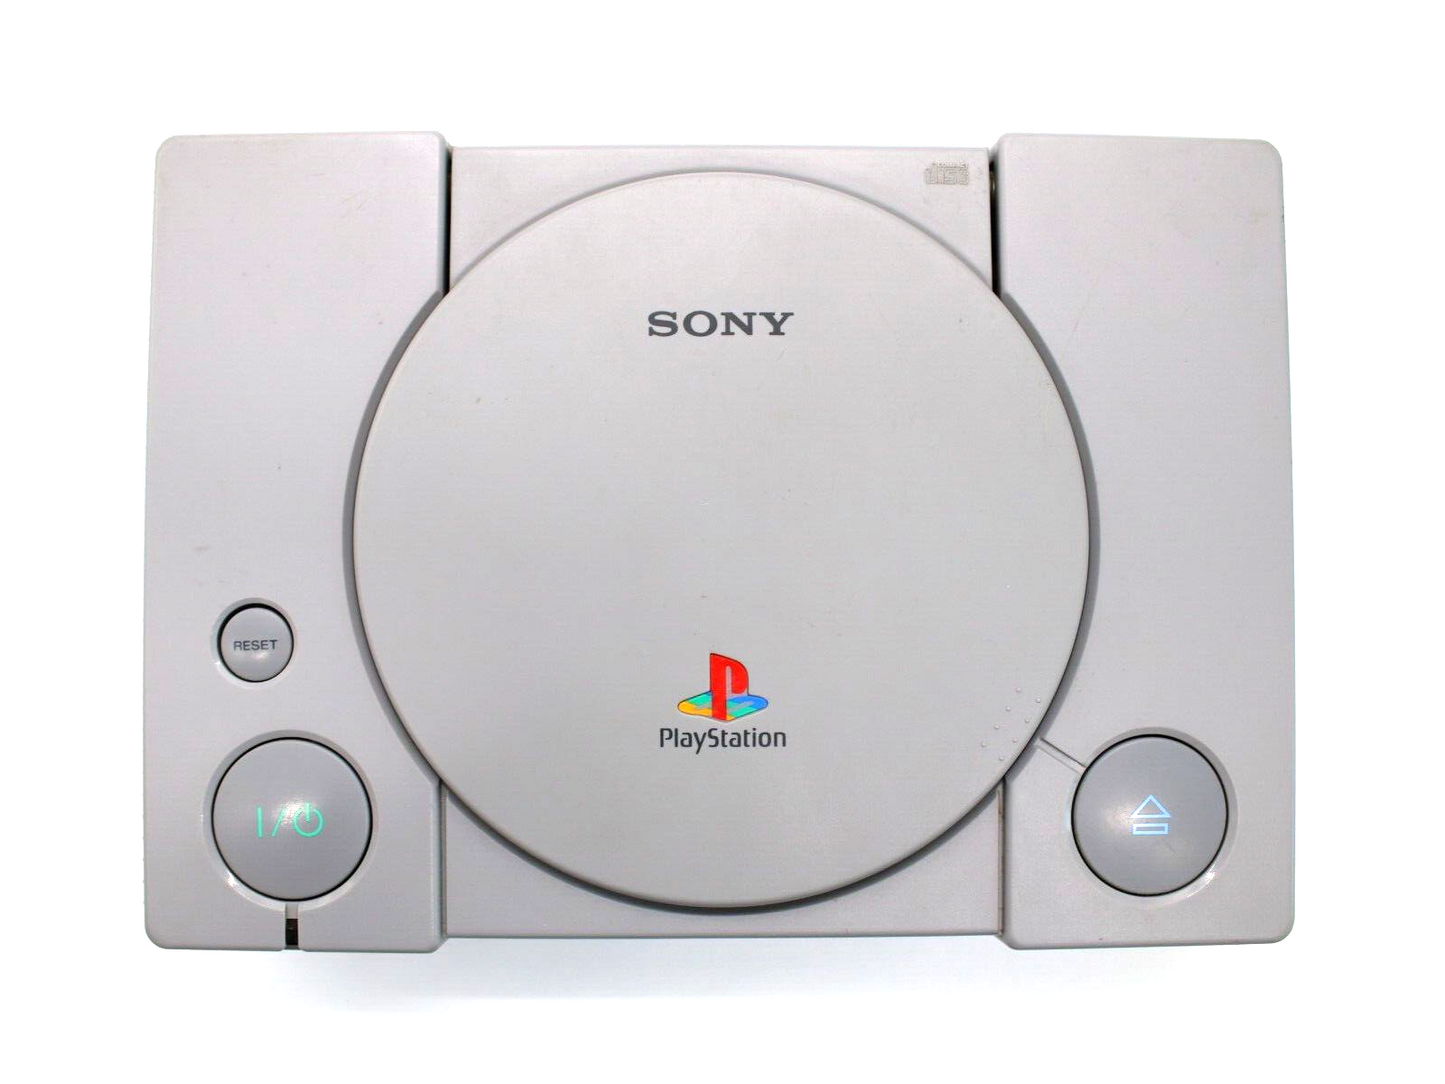 Sony Playstation 1 FAT Konsole grau gebraucht PS1